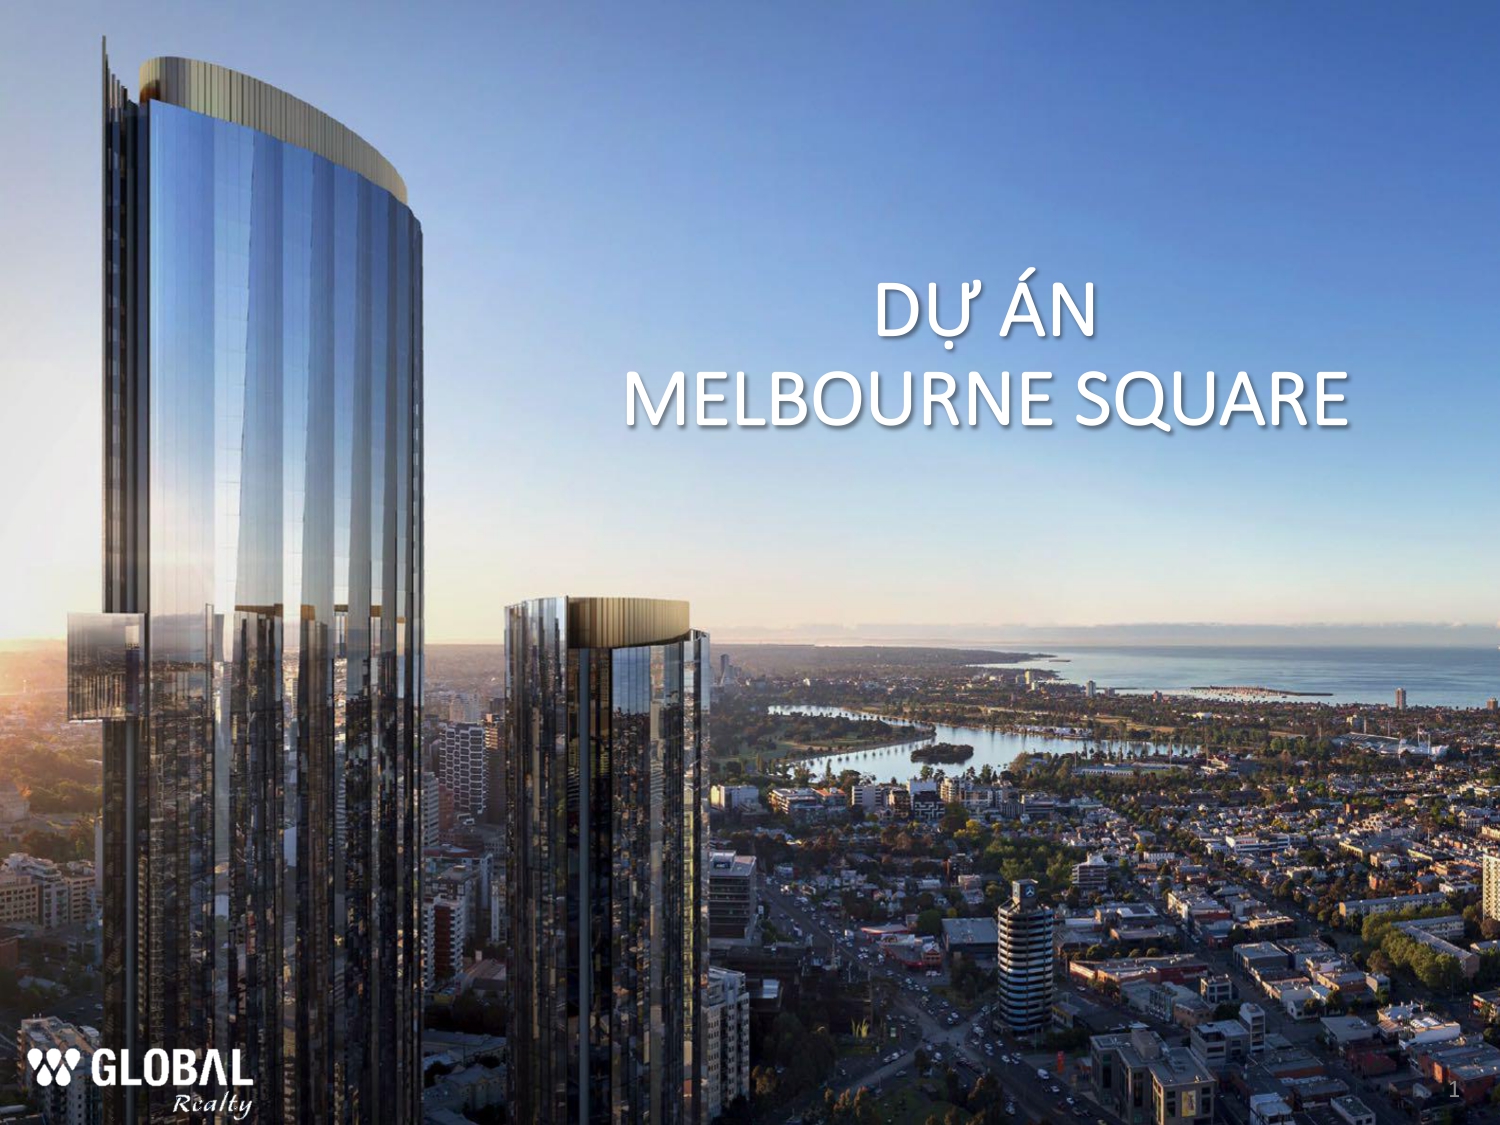 Melbourne Square